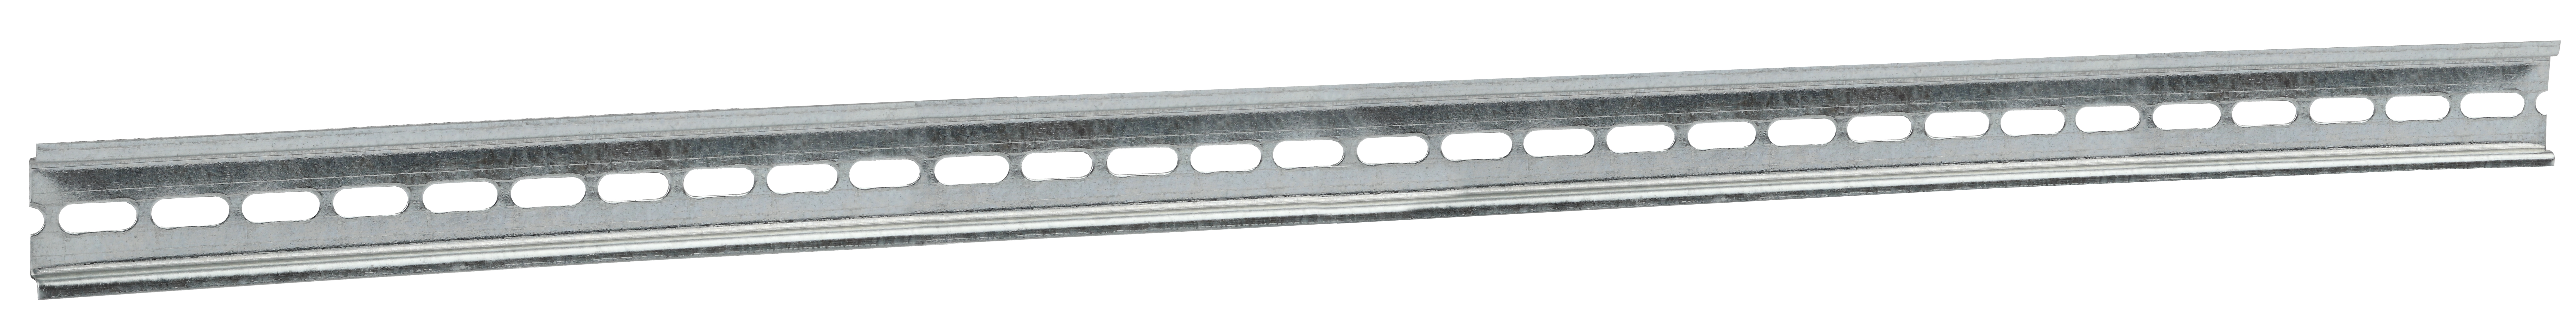 ЭРА DIN-рейка оцинкованная, перфорированная 600 мм (7,5х35х600) (100/3200)